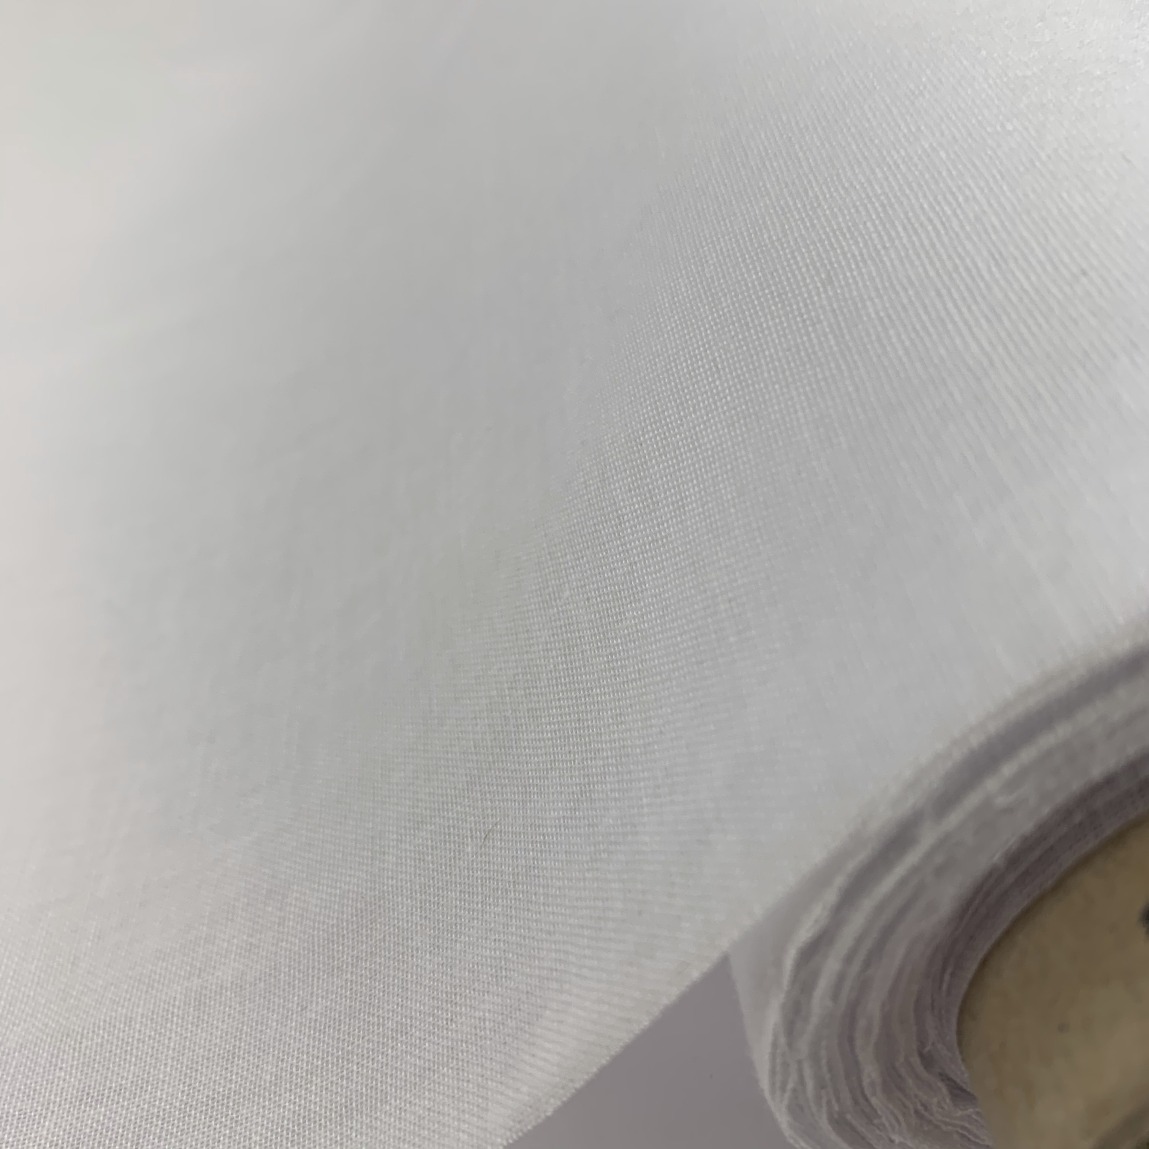 Sew-in Interfacing - fabric roll